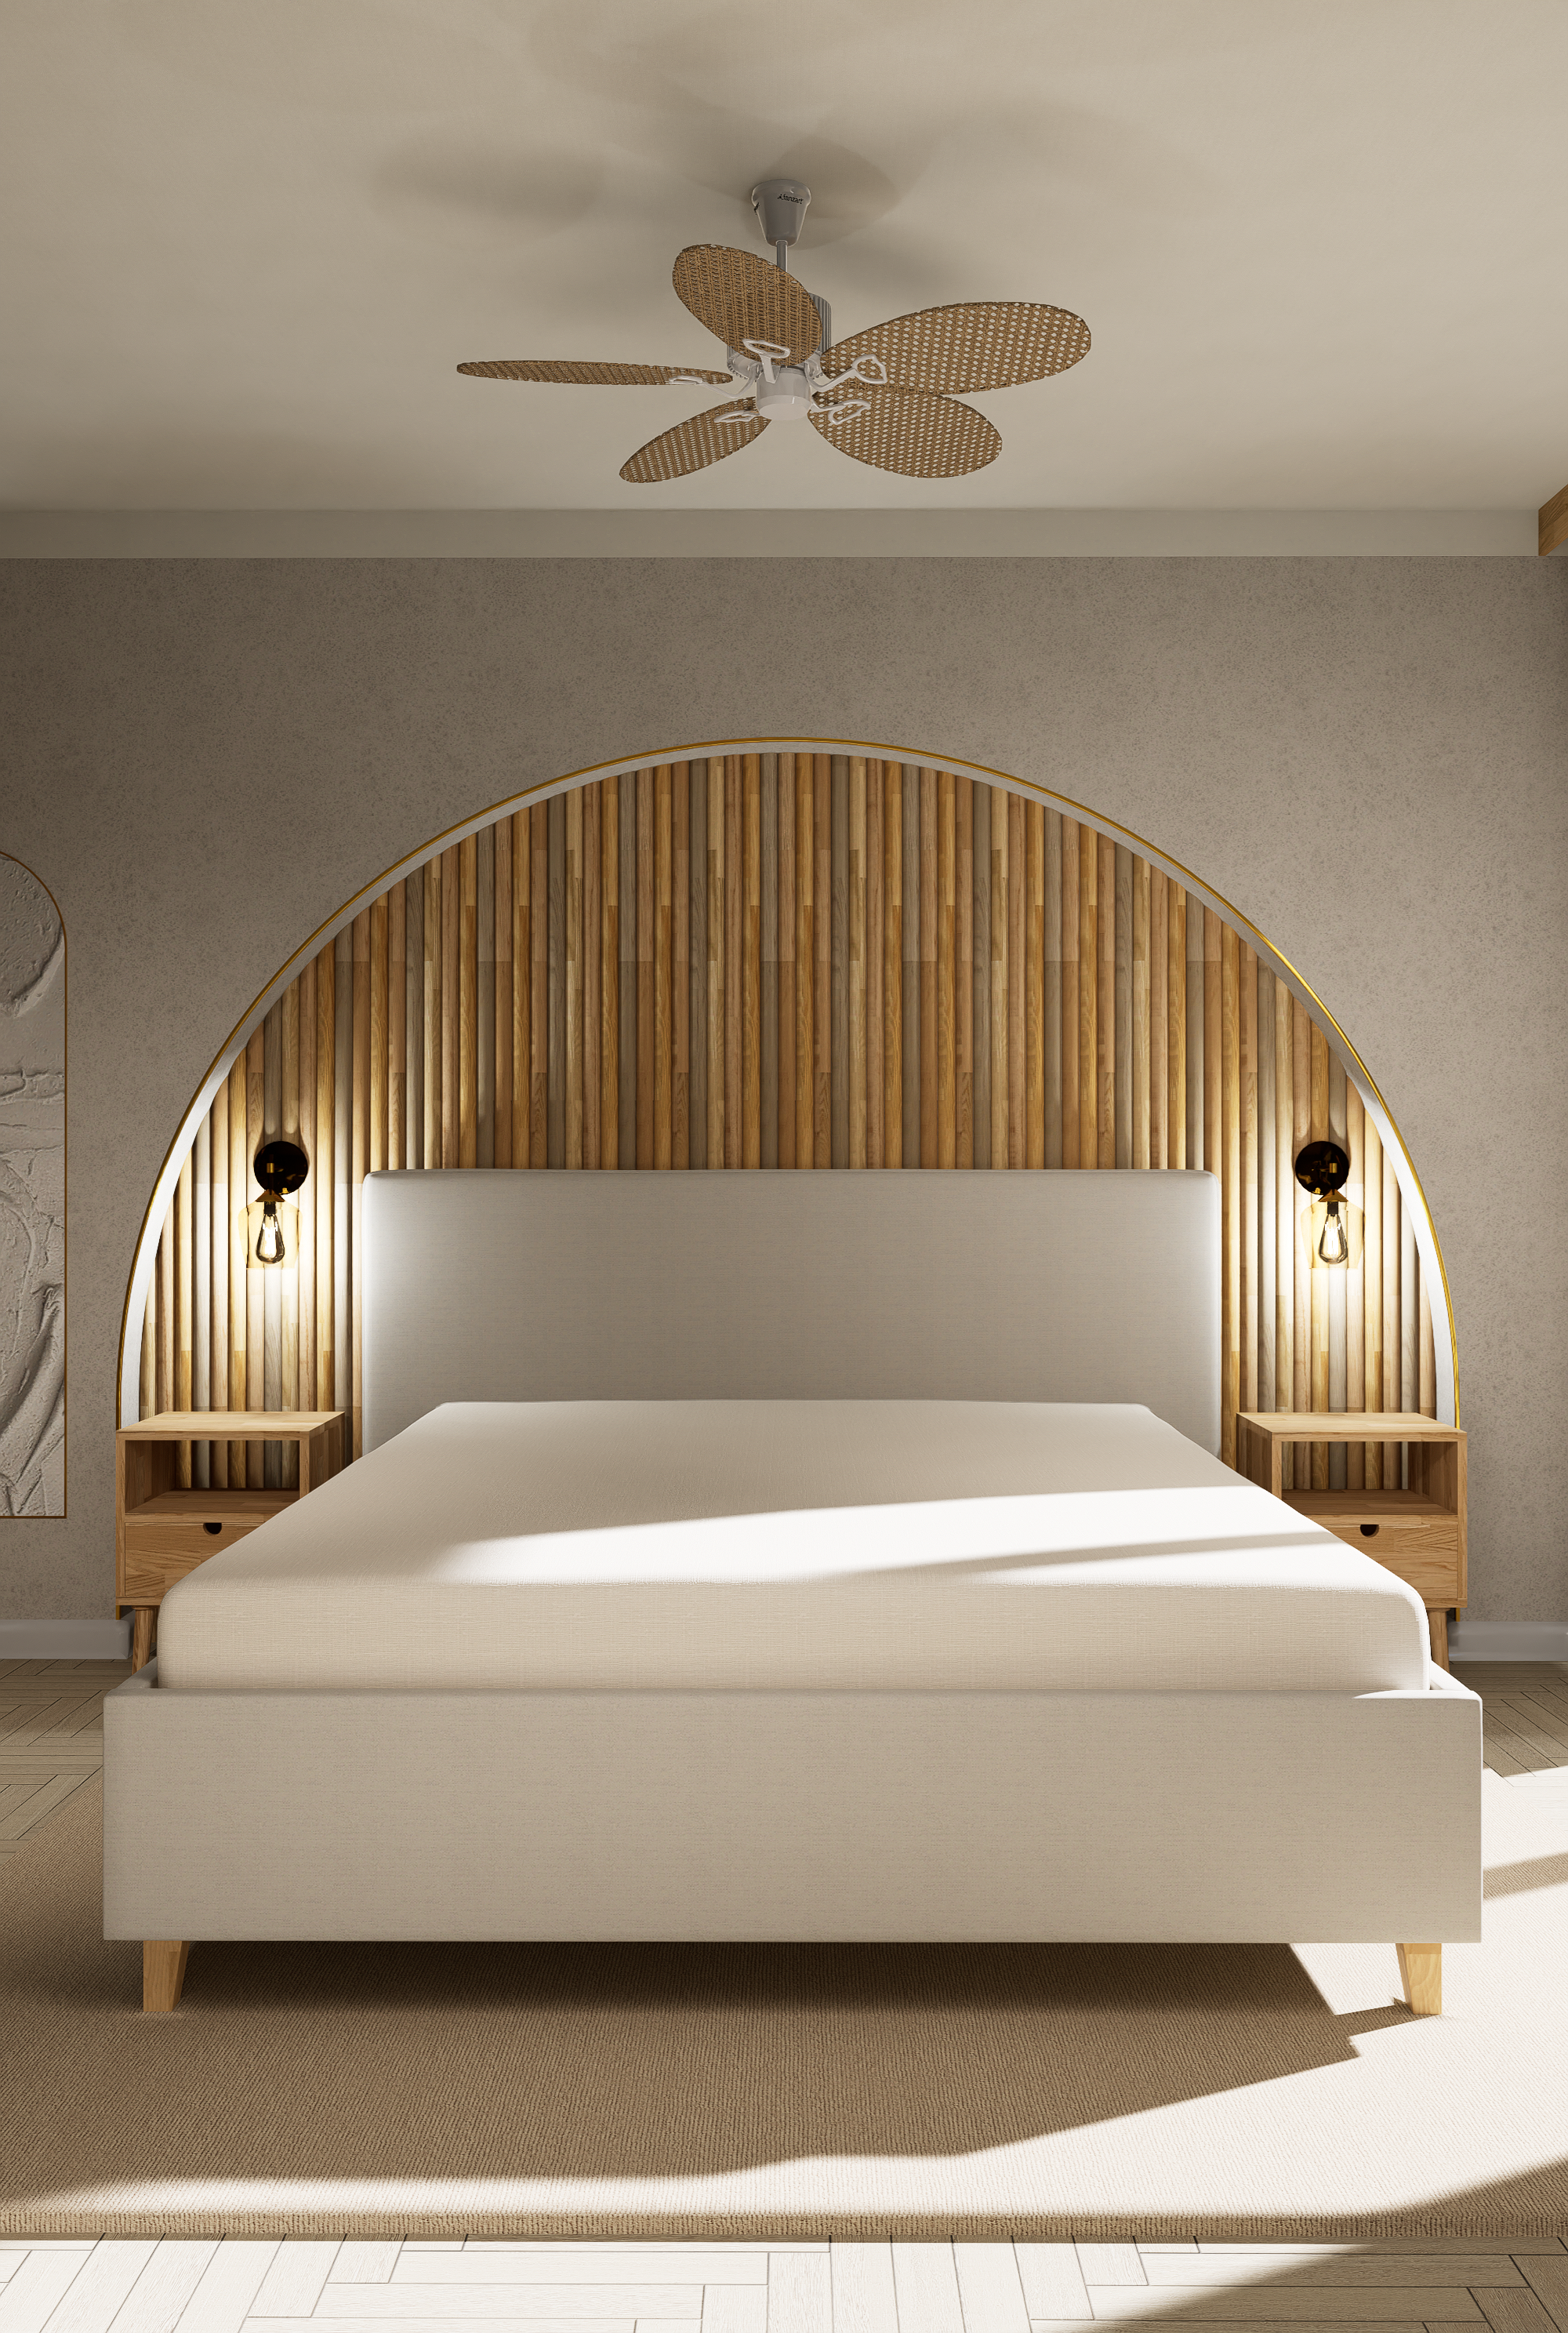 Beton i drewno w sypialni